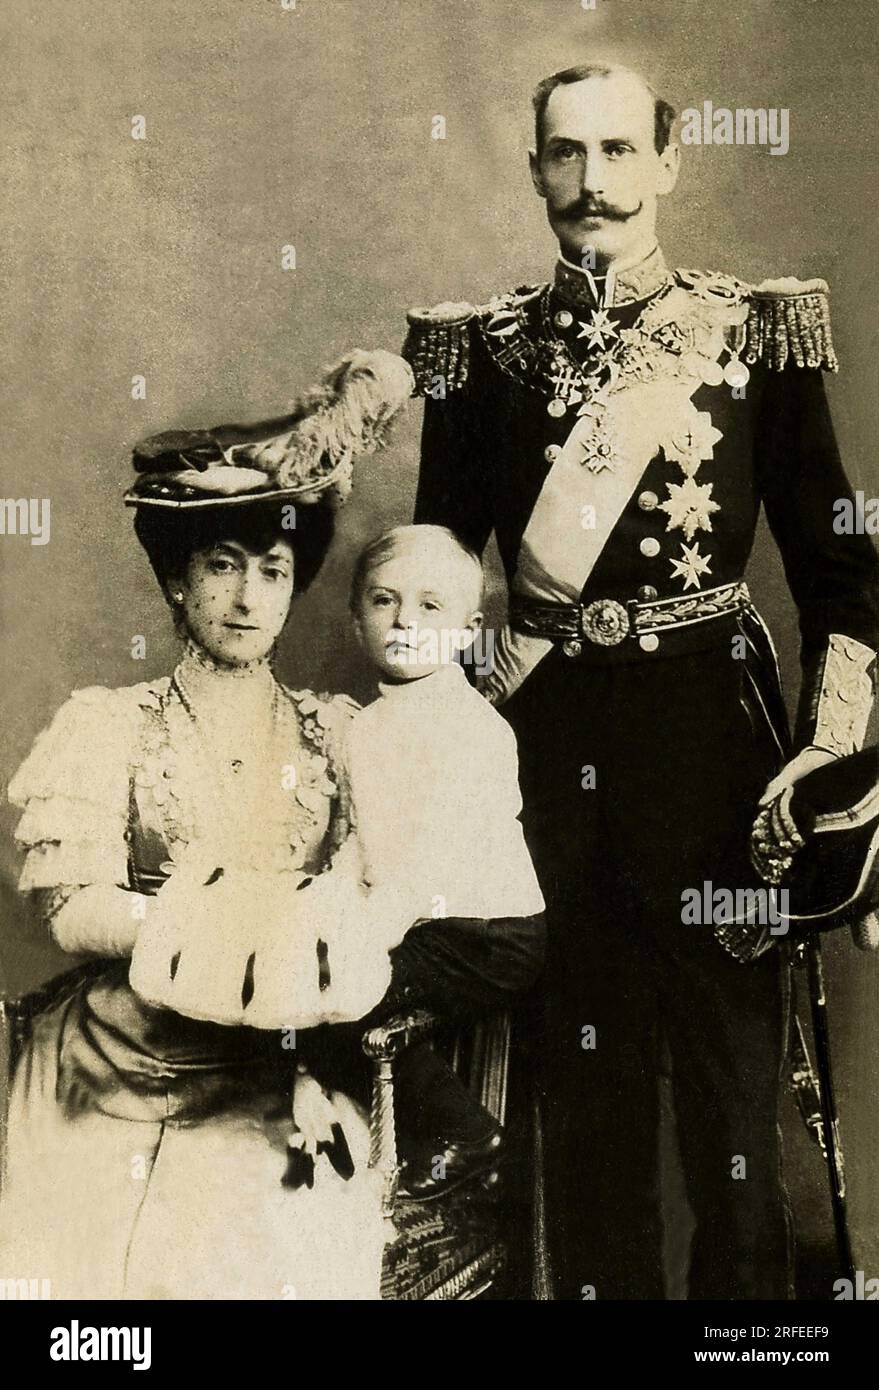 Portrait de Haakon VII (1872-1957), roi de Norvege de 1905 A 1957 et la reine Maud. Photo, début du 20 e siecle. Banque D'Images